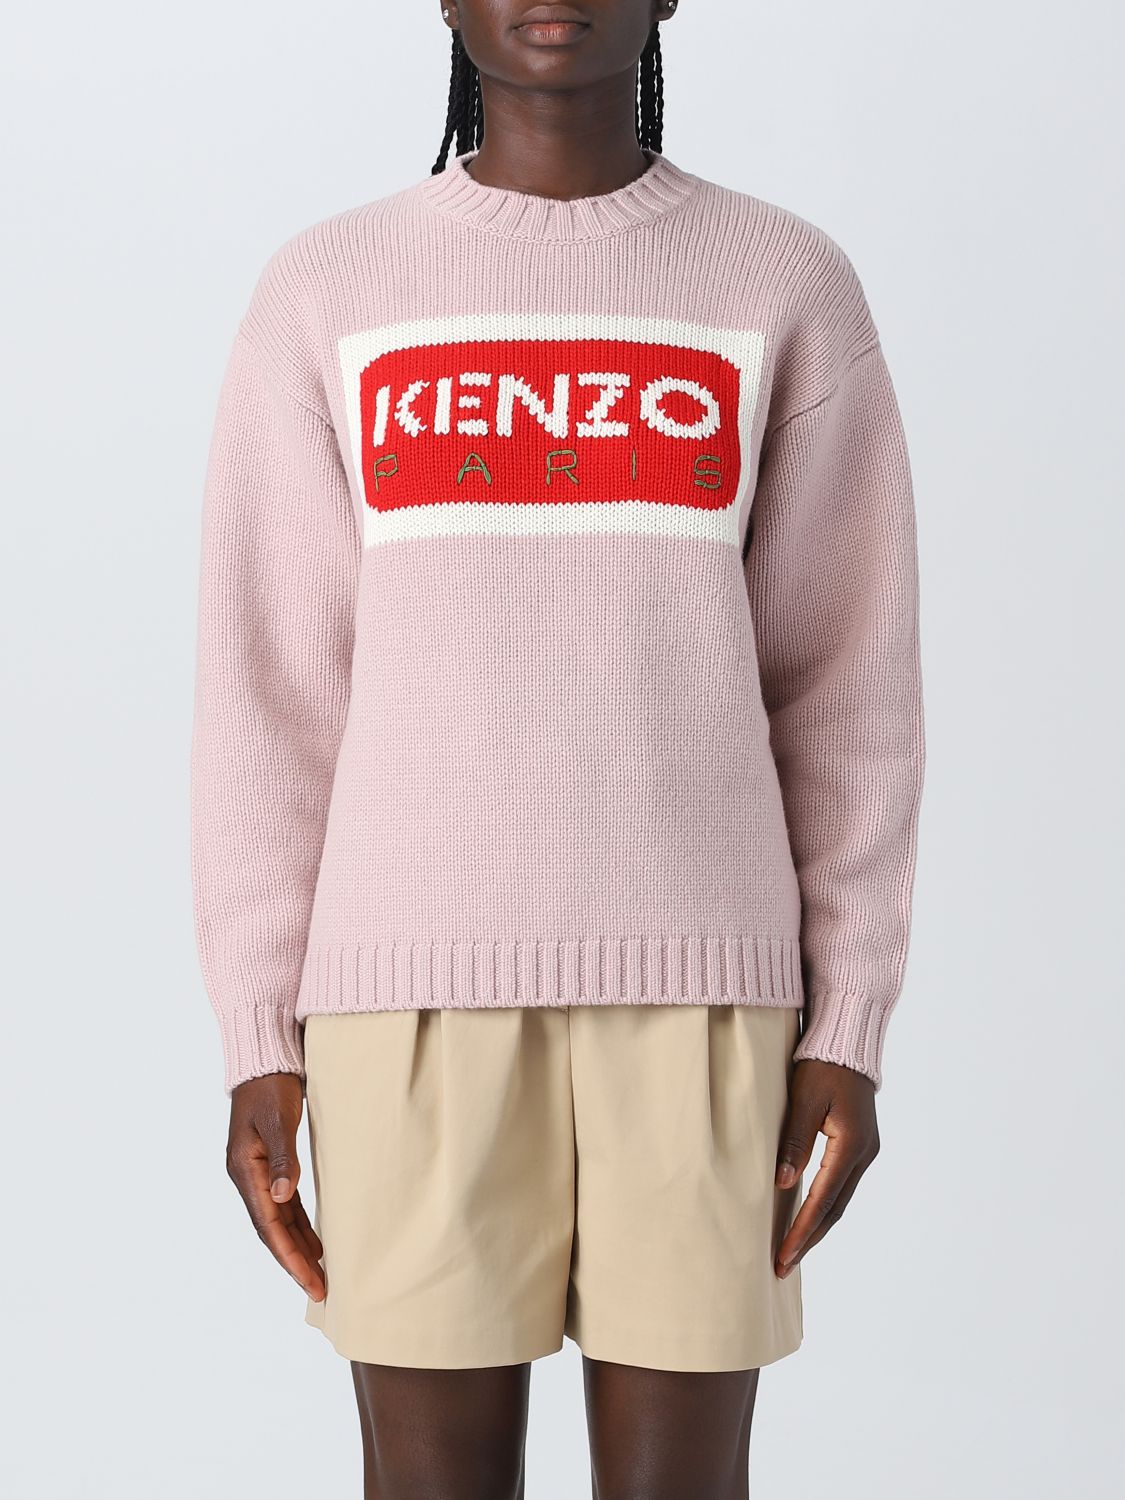 毛衣 KENZO 女士 颜色 粉色